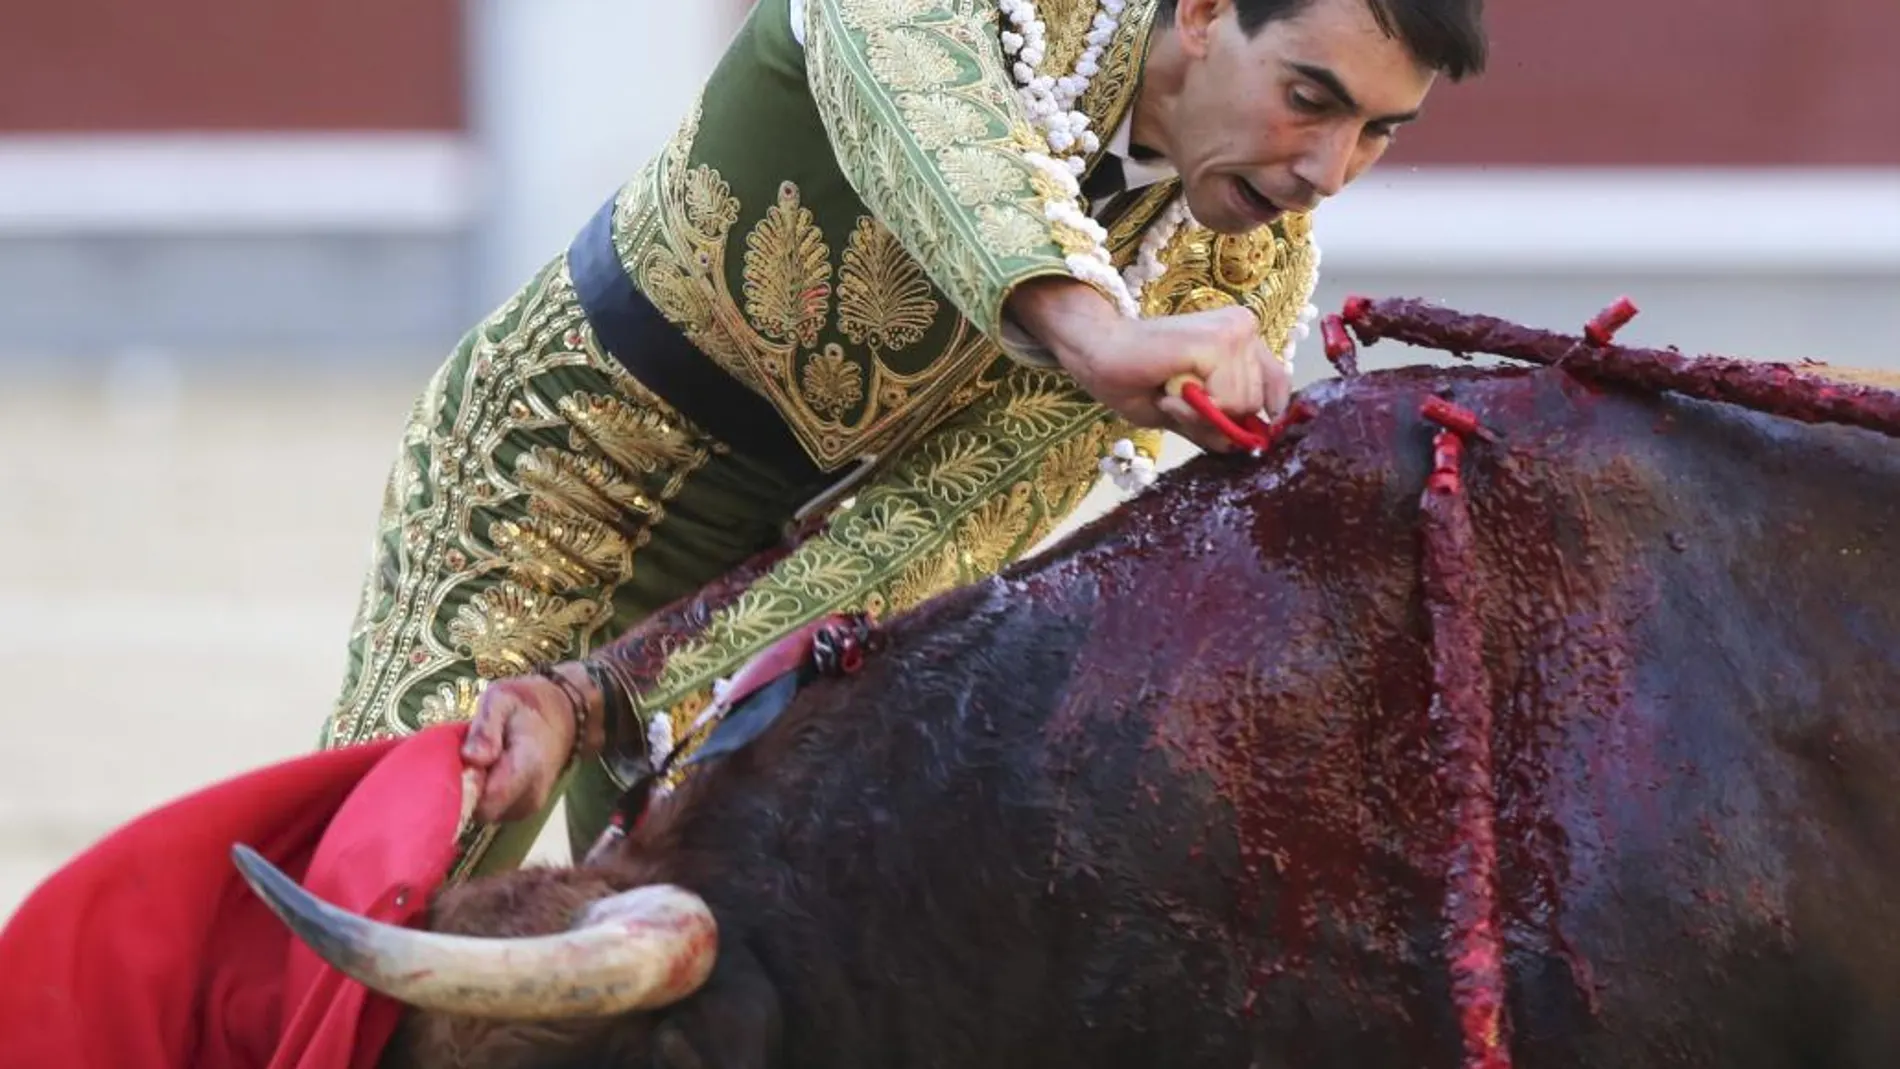 Jiménez Fortes clava una estocada hasta la empuñadura a su primer toro, durante el séptimo festejo de la Feria de San Isidro en Las Ventas.